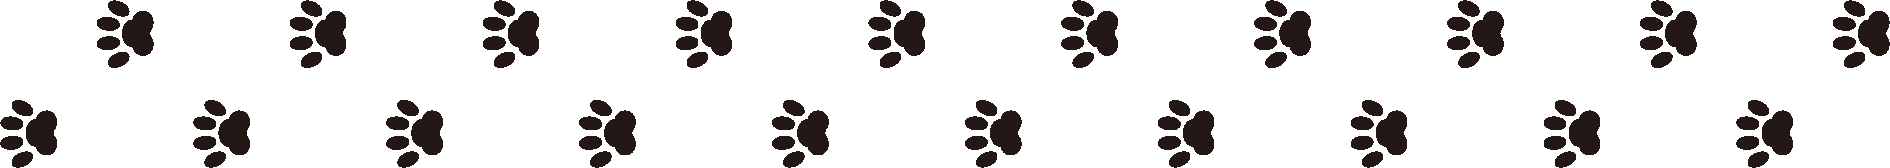 犬の足跡のライン